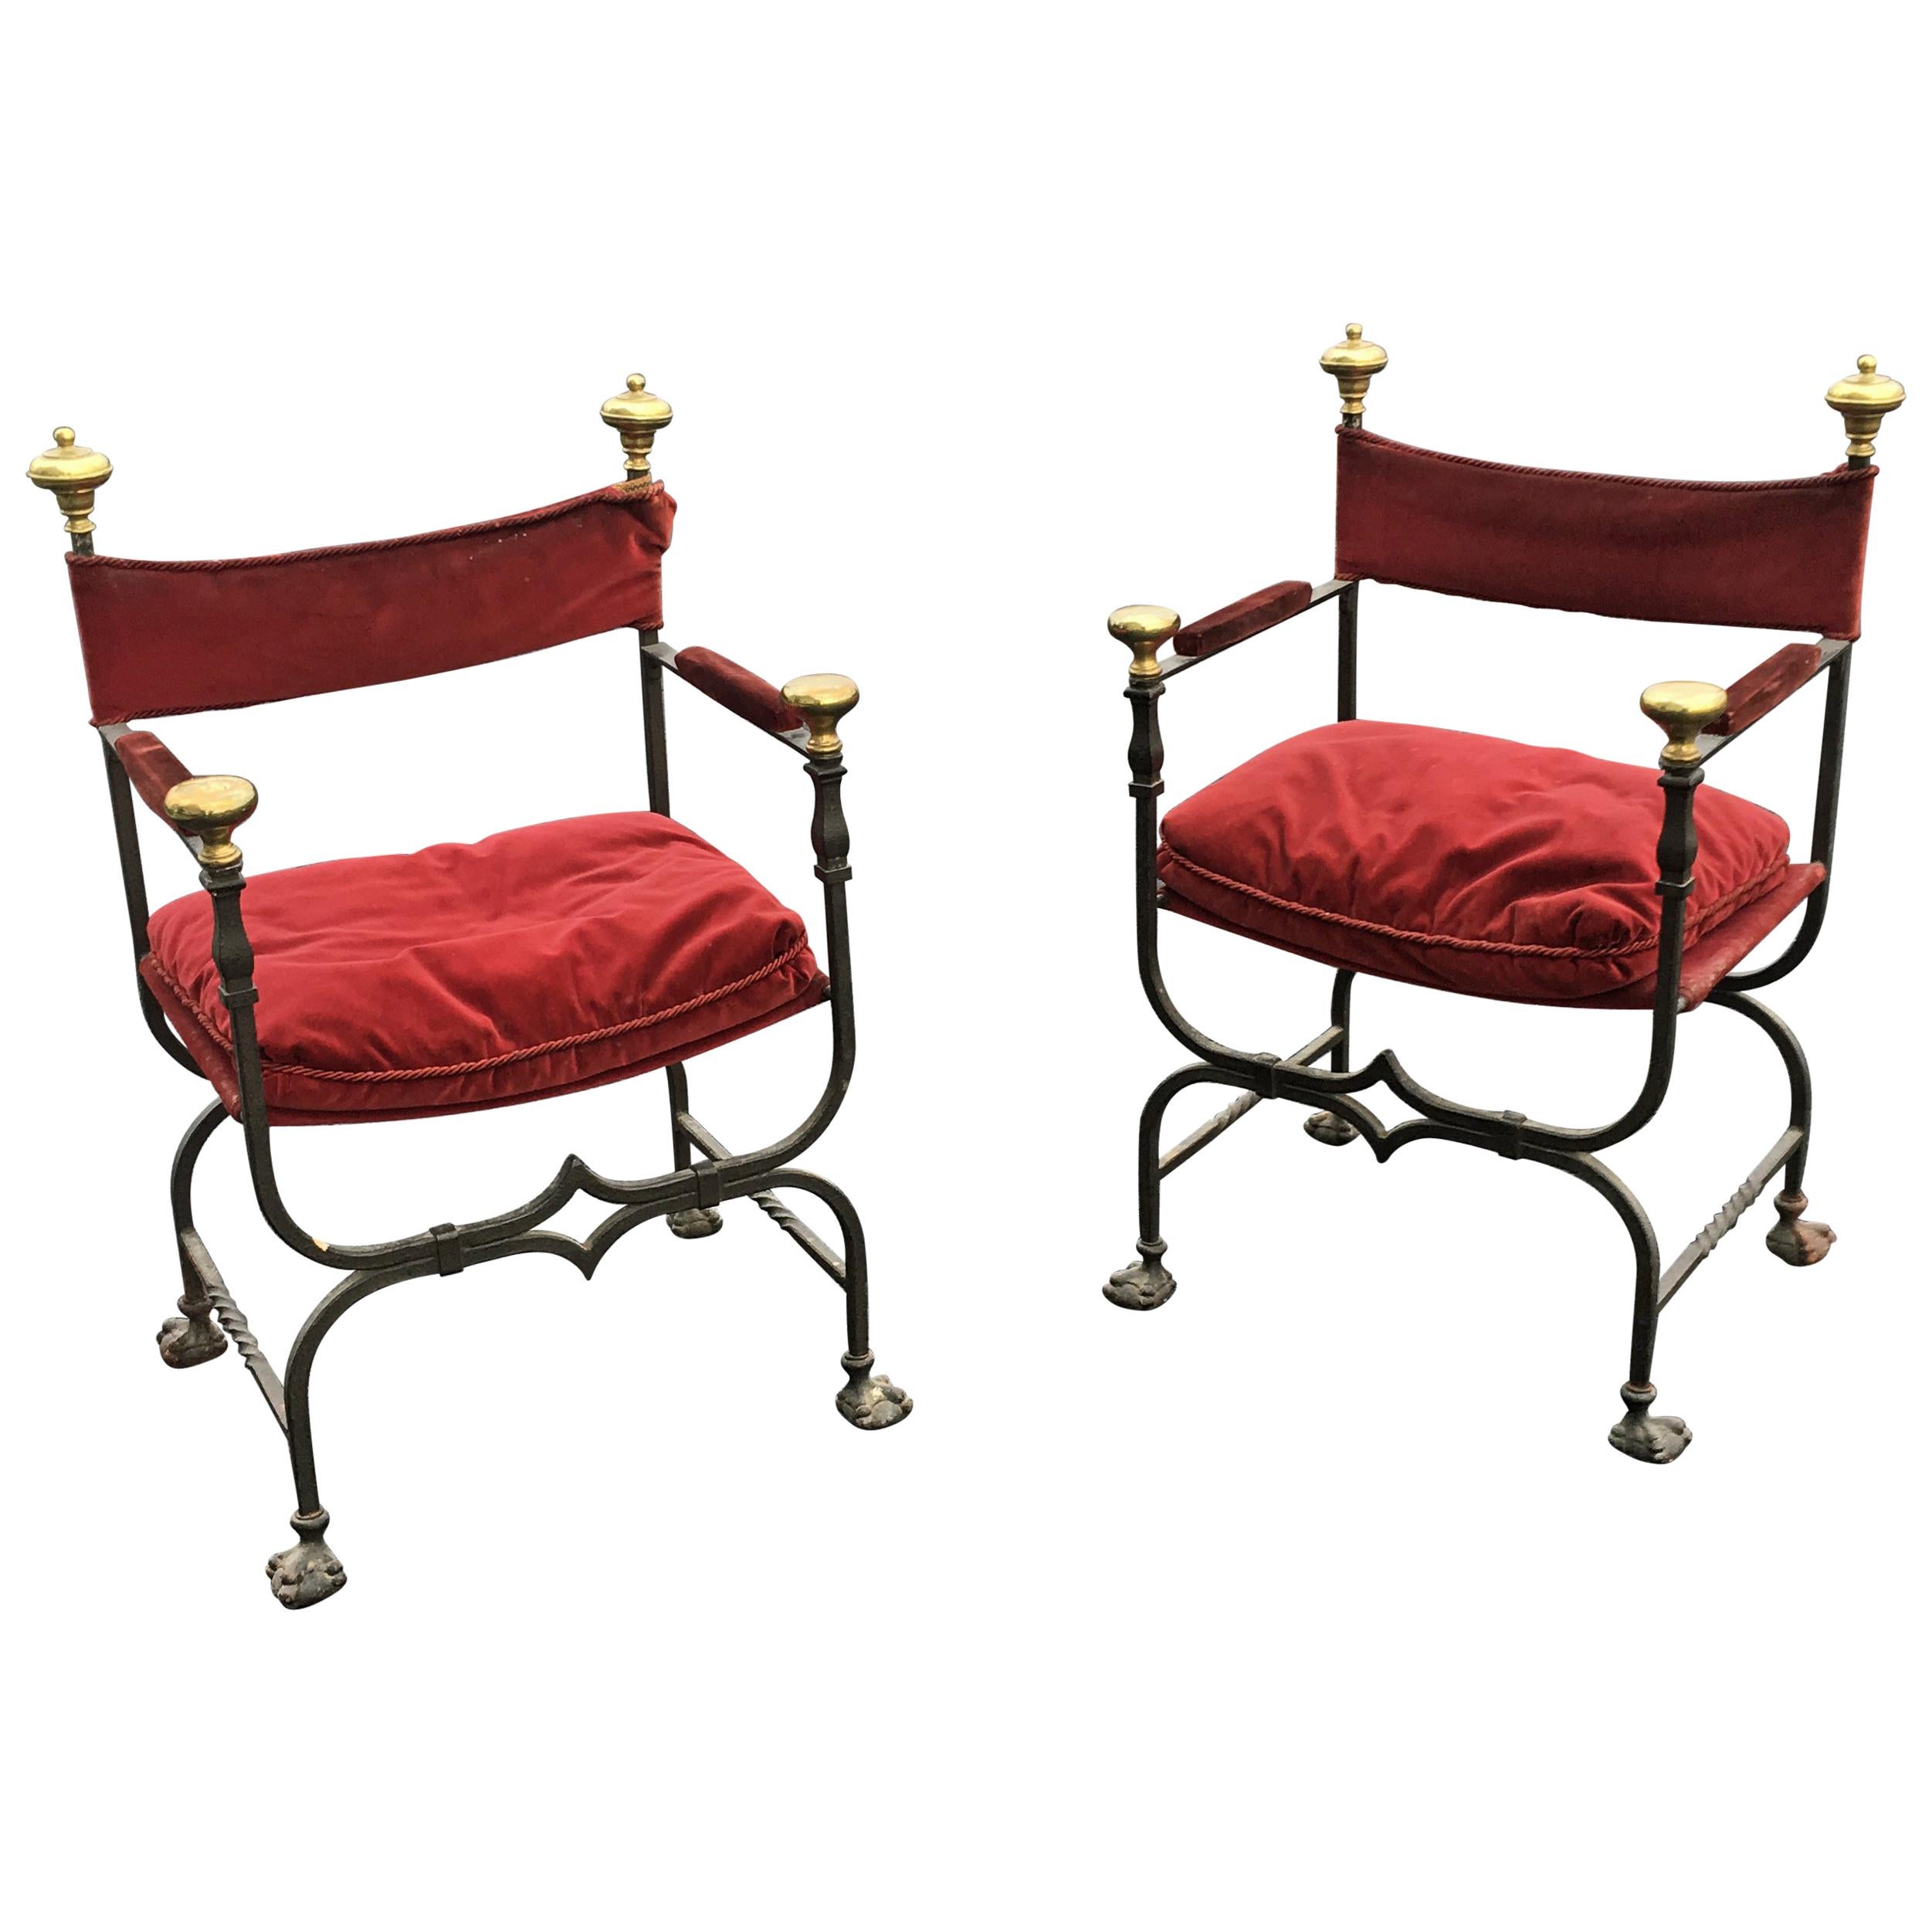 3 fauteuils curules flamands en fer, laiton et velours, datant d'environ 1900